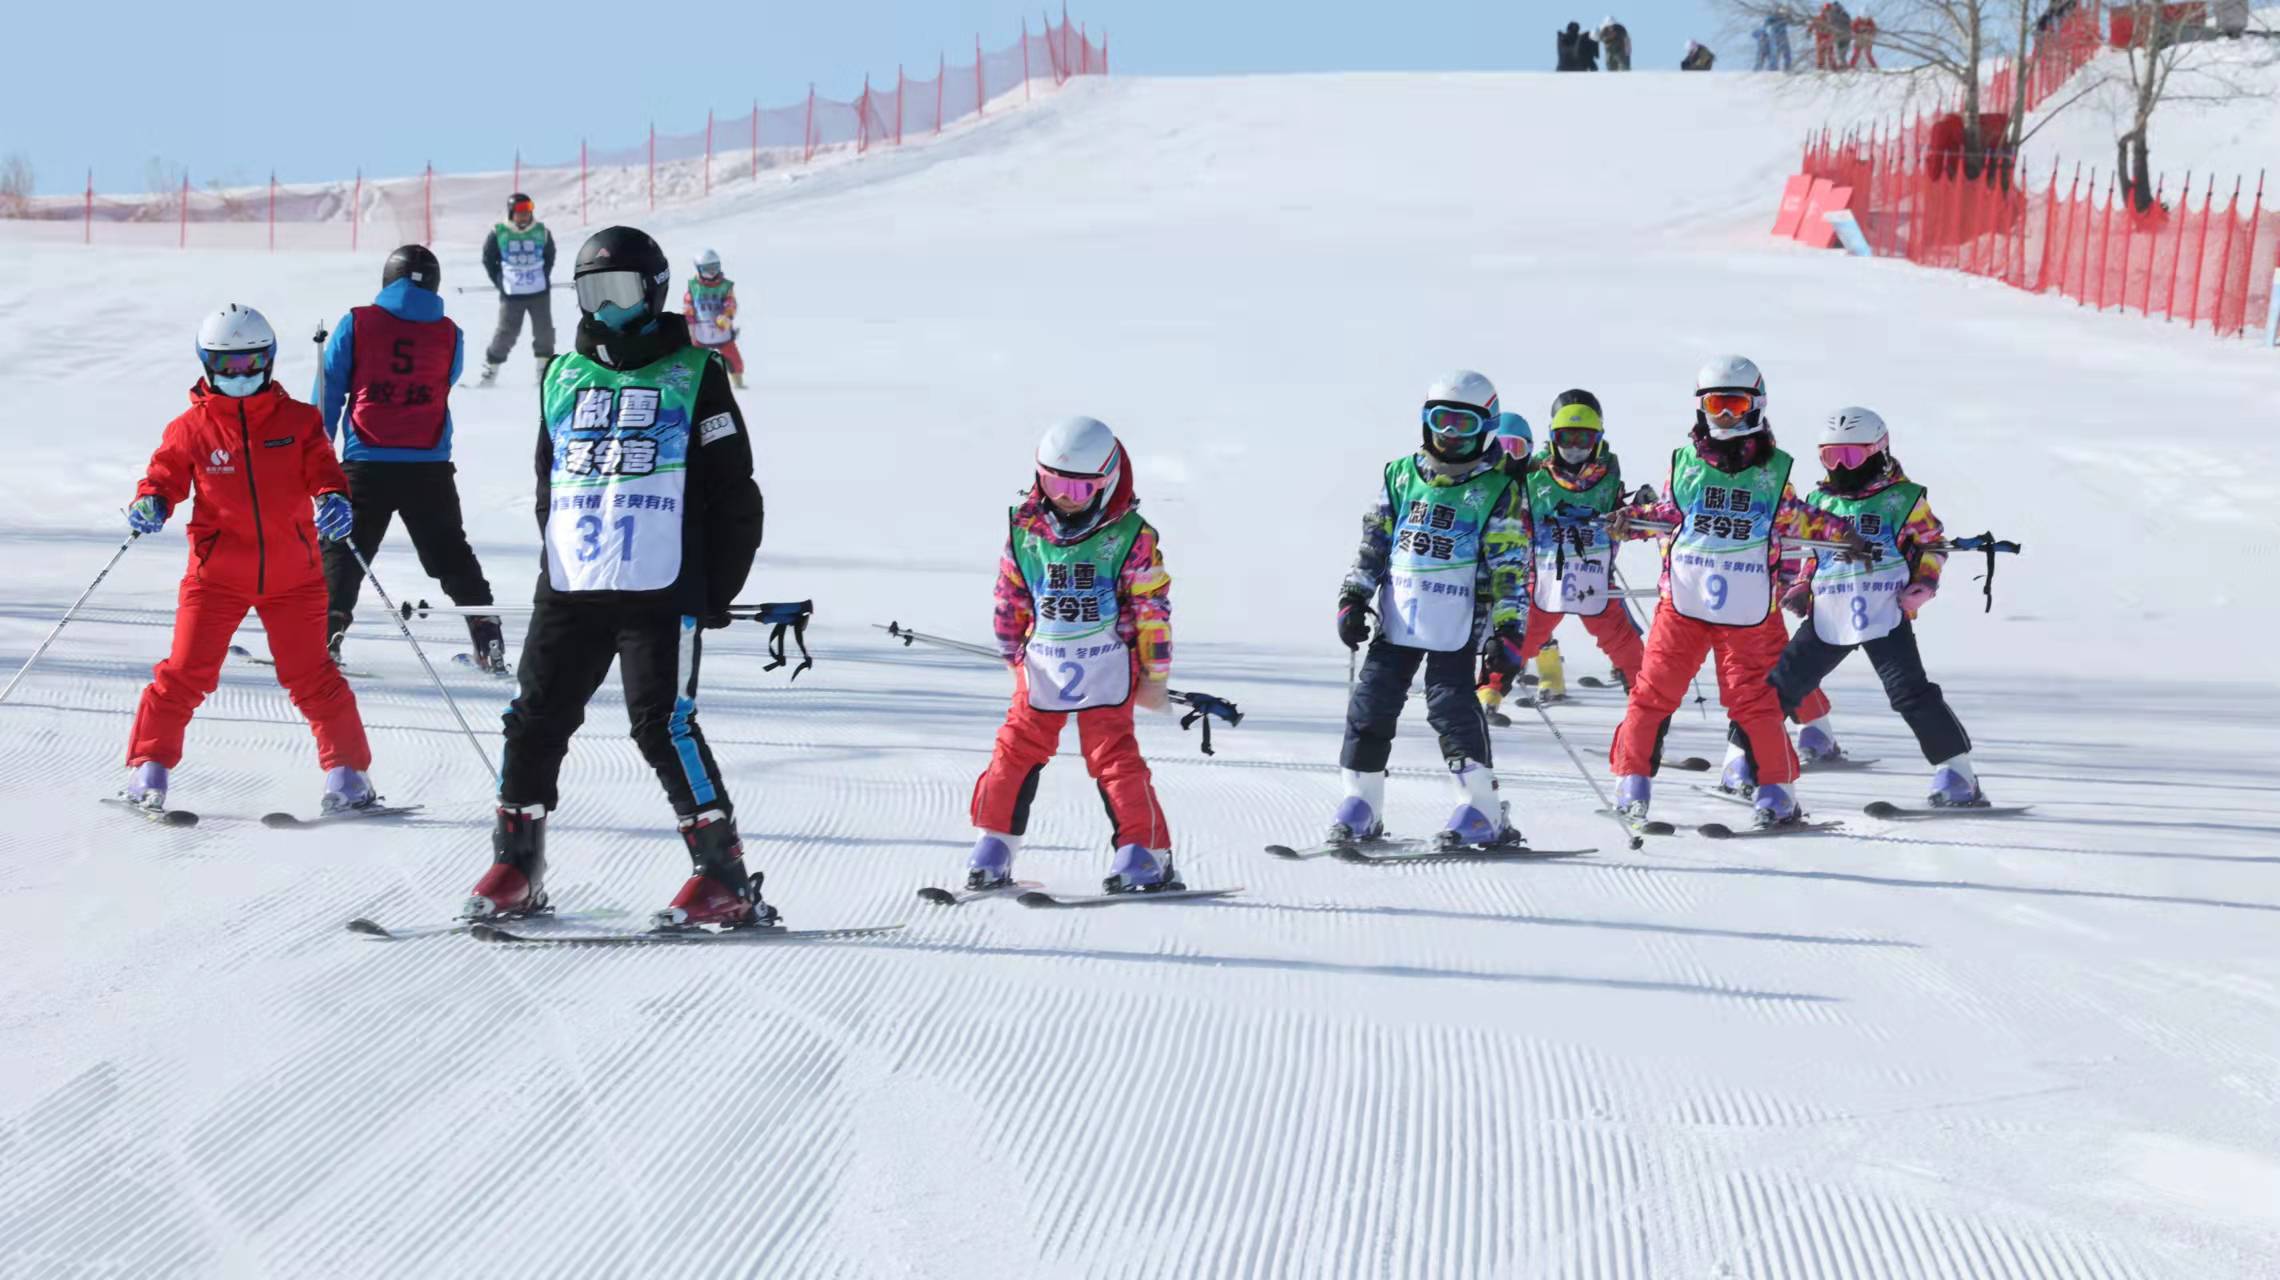 傲雪冬令营的小朋友正在教练的带领下练习，冬令营已经培训了八百余名少年儿童滑雪爱好者。 本报记者 修伯明 摄.jpeg